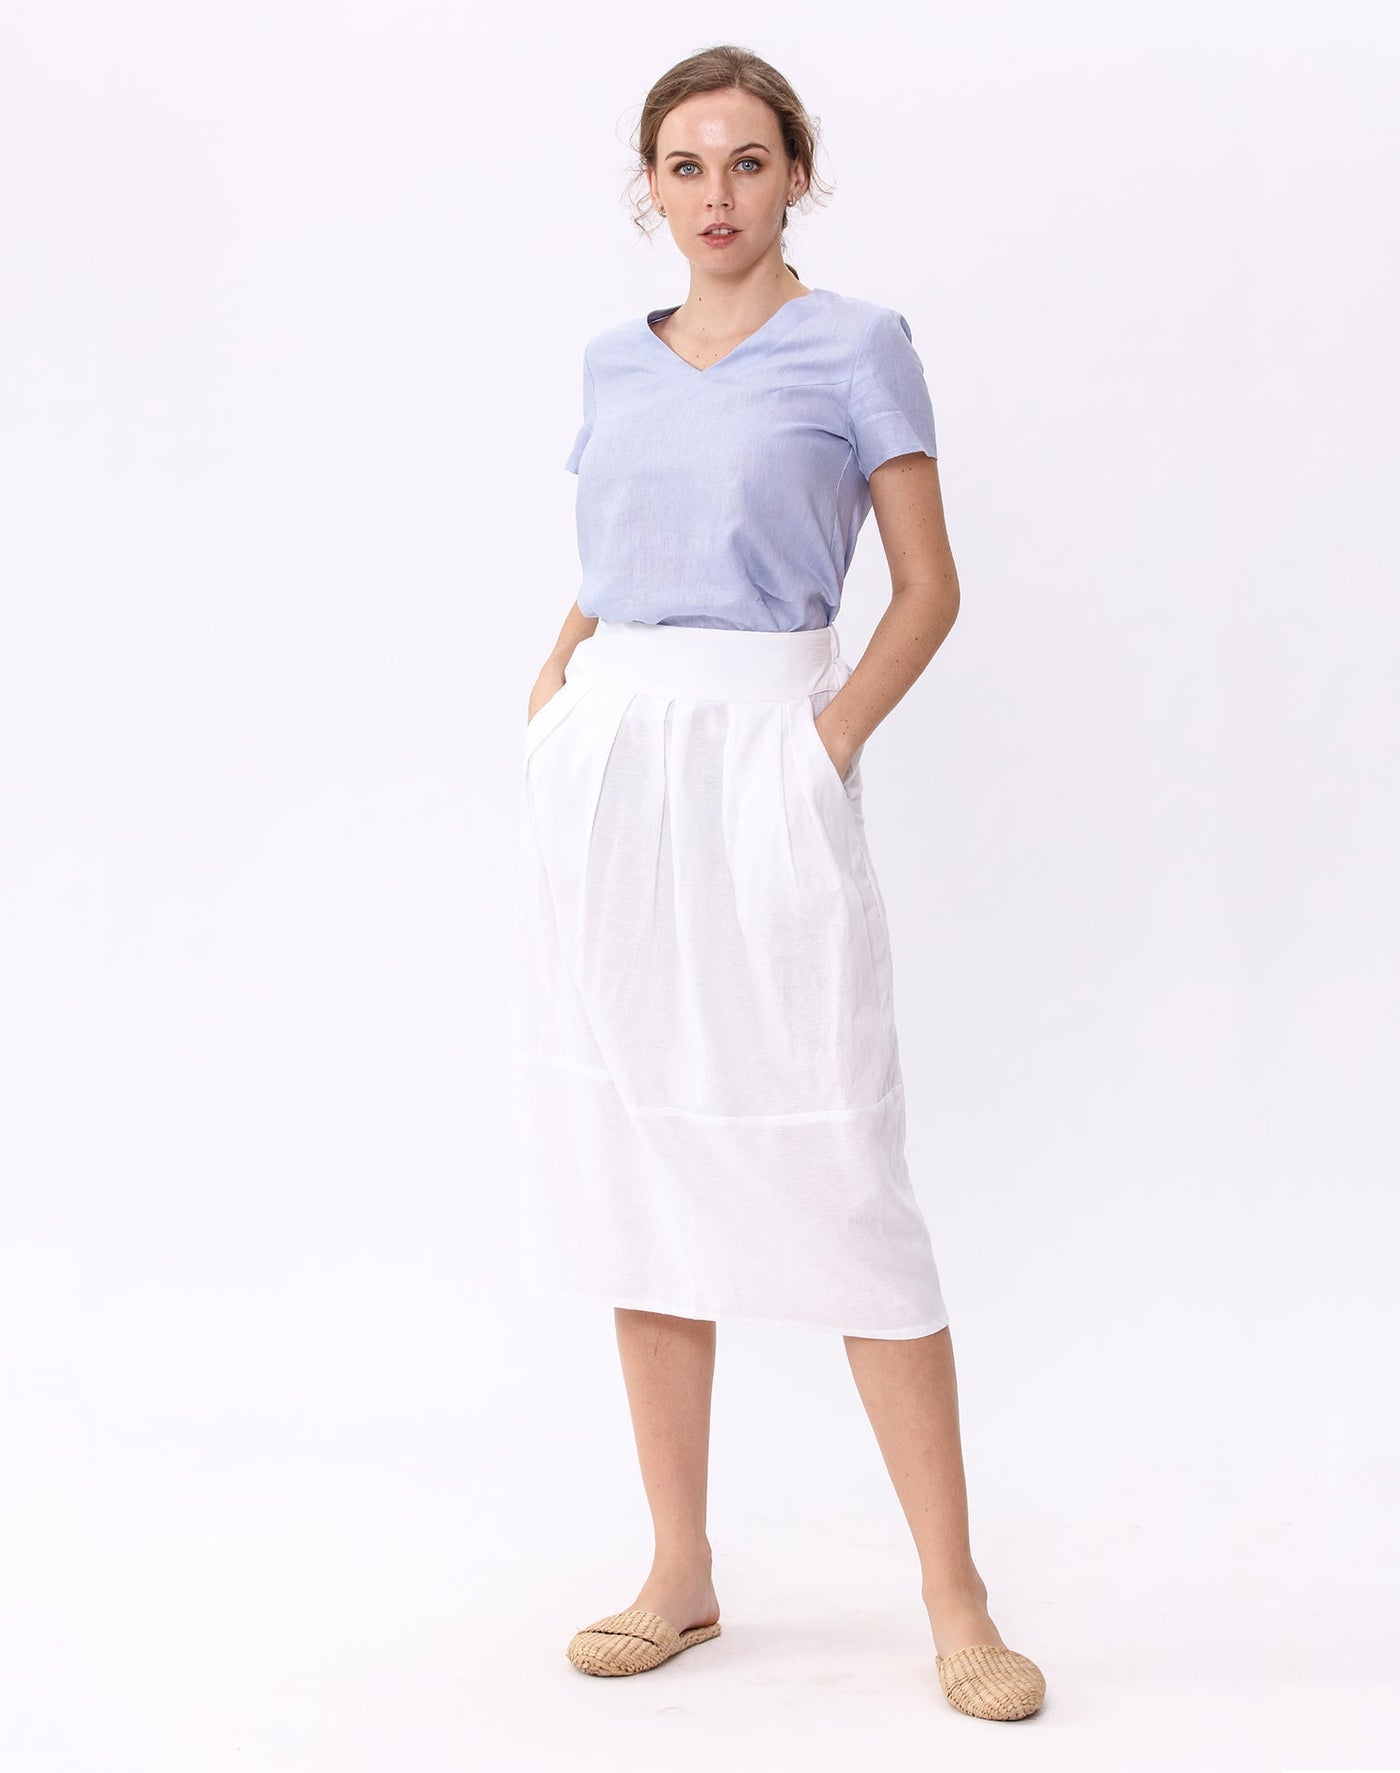 Amazhiyu Skirt S / White Linen Pleated Pockets Skirt